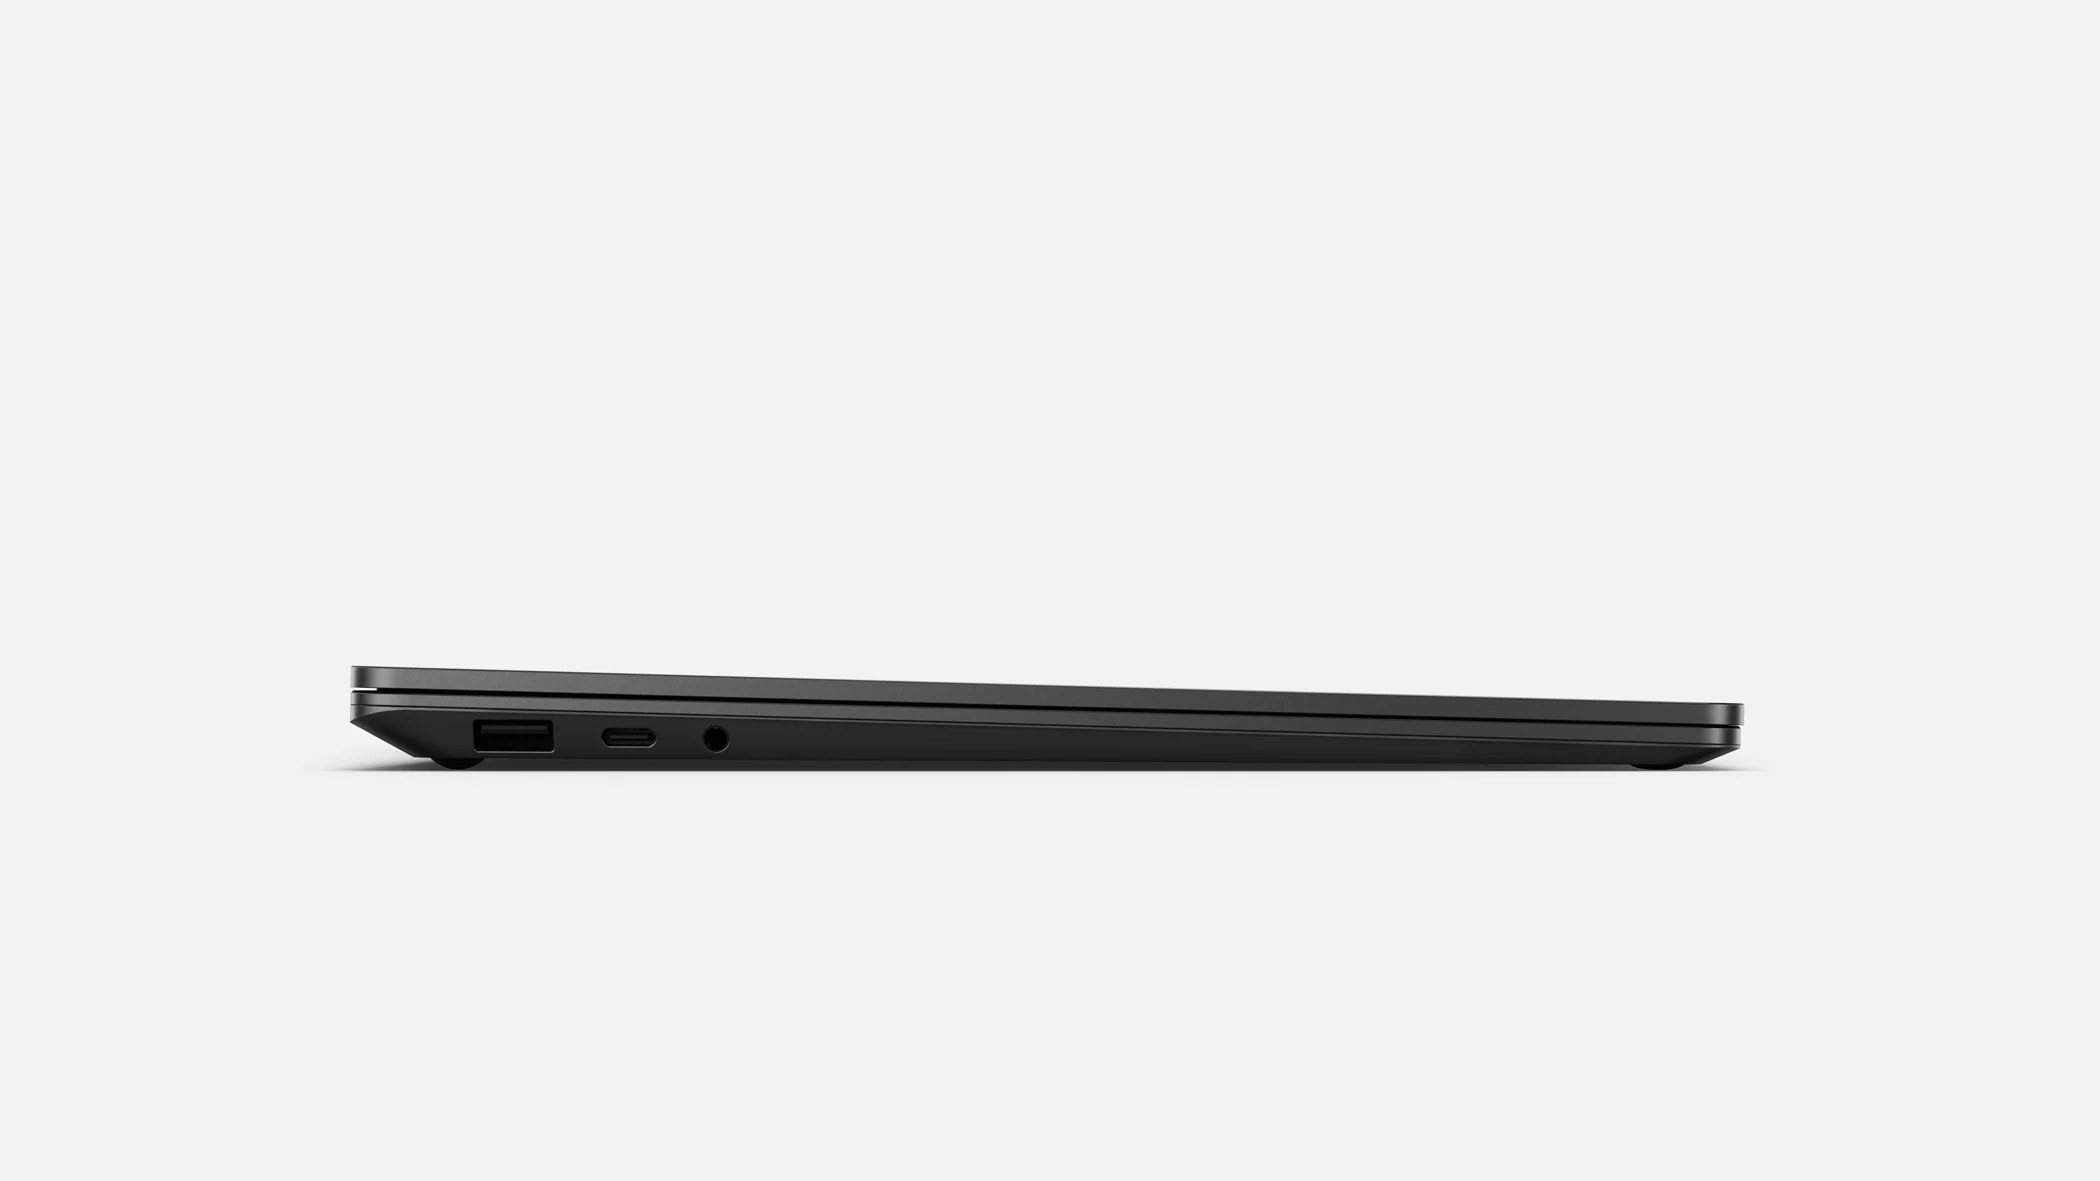 SurfaceLaptop3-6